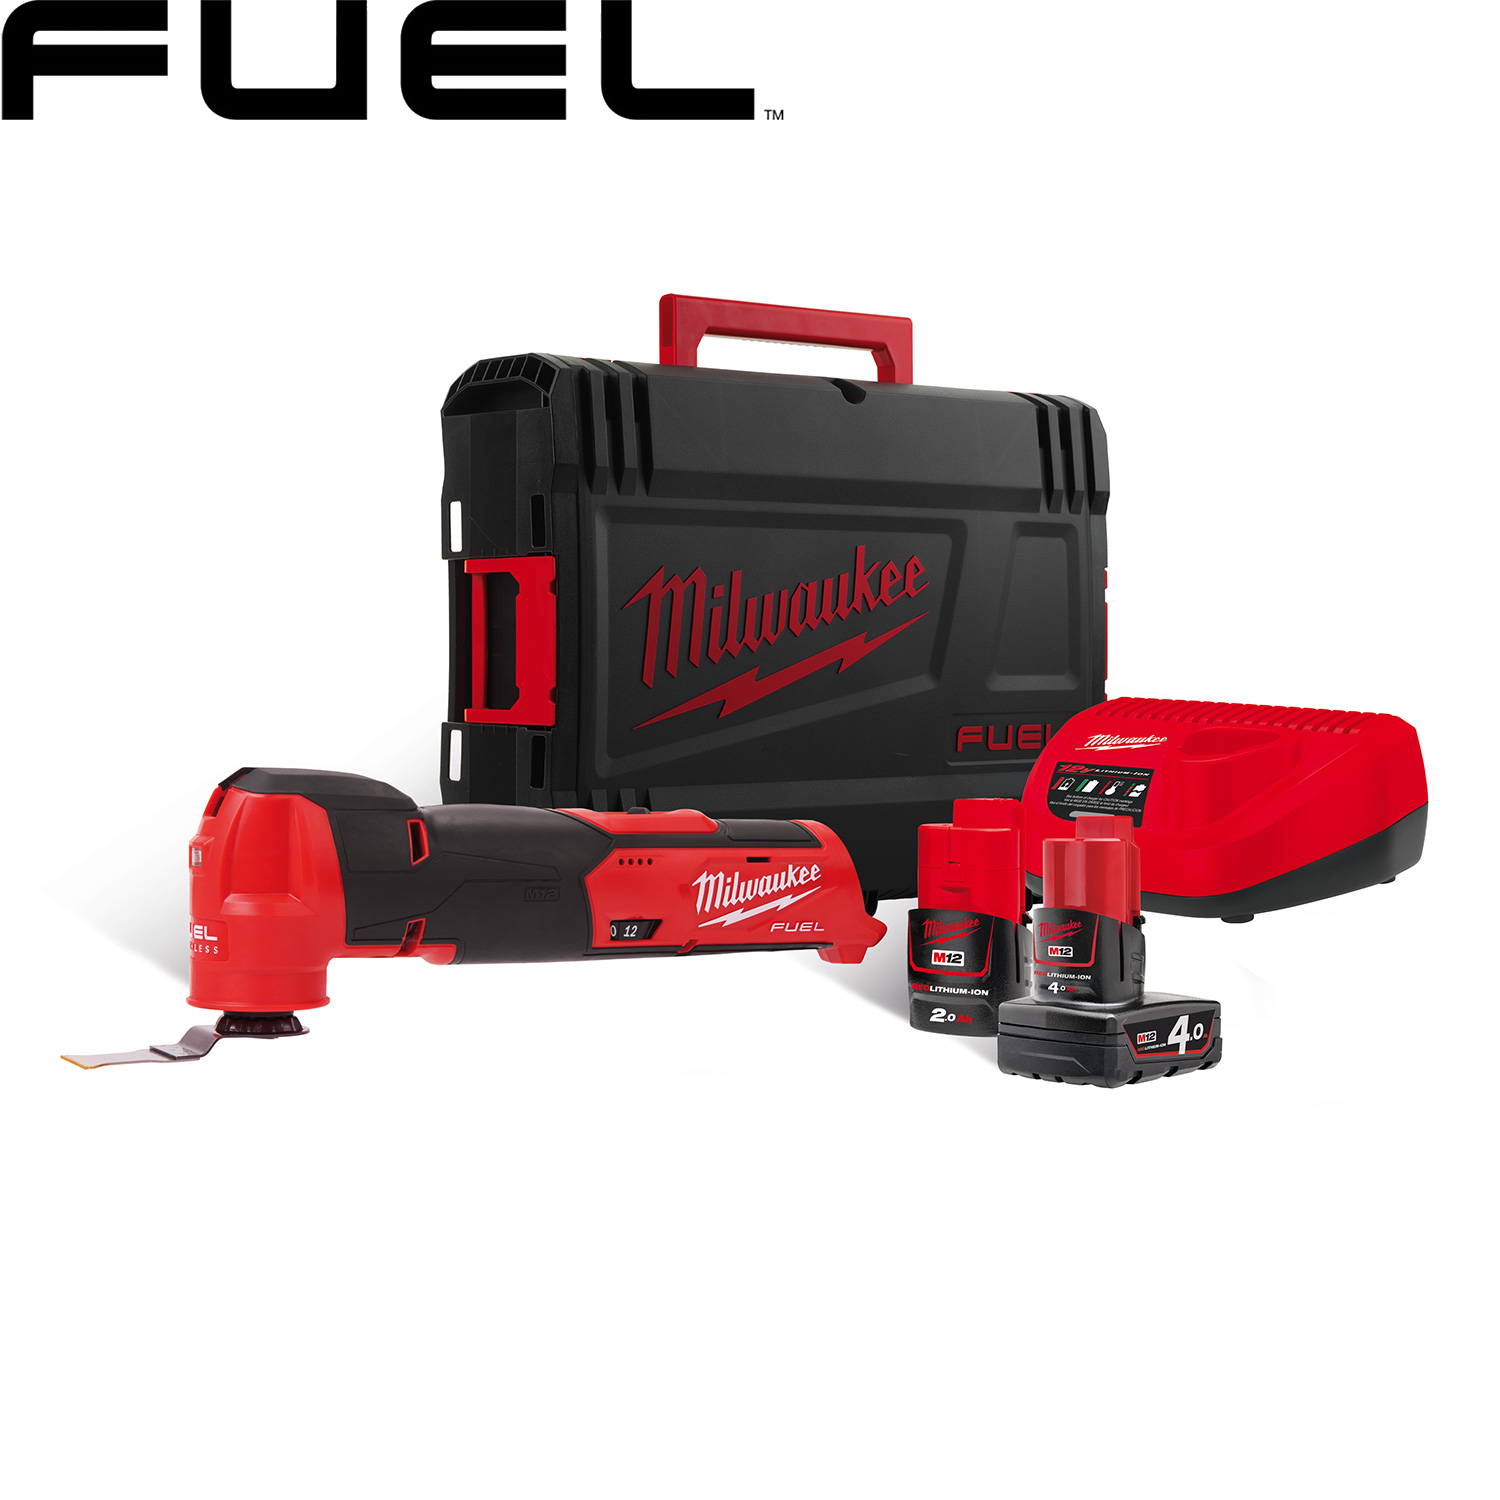 milwaukee fuel multi tool